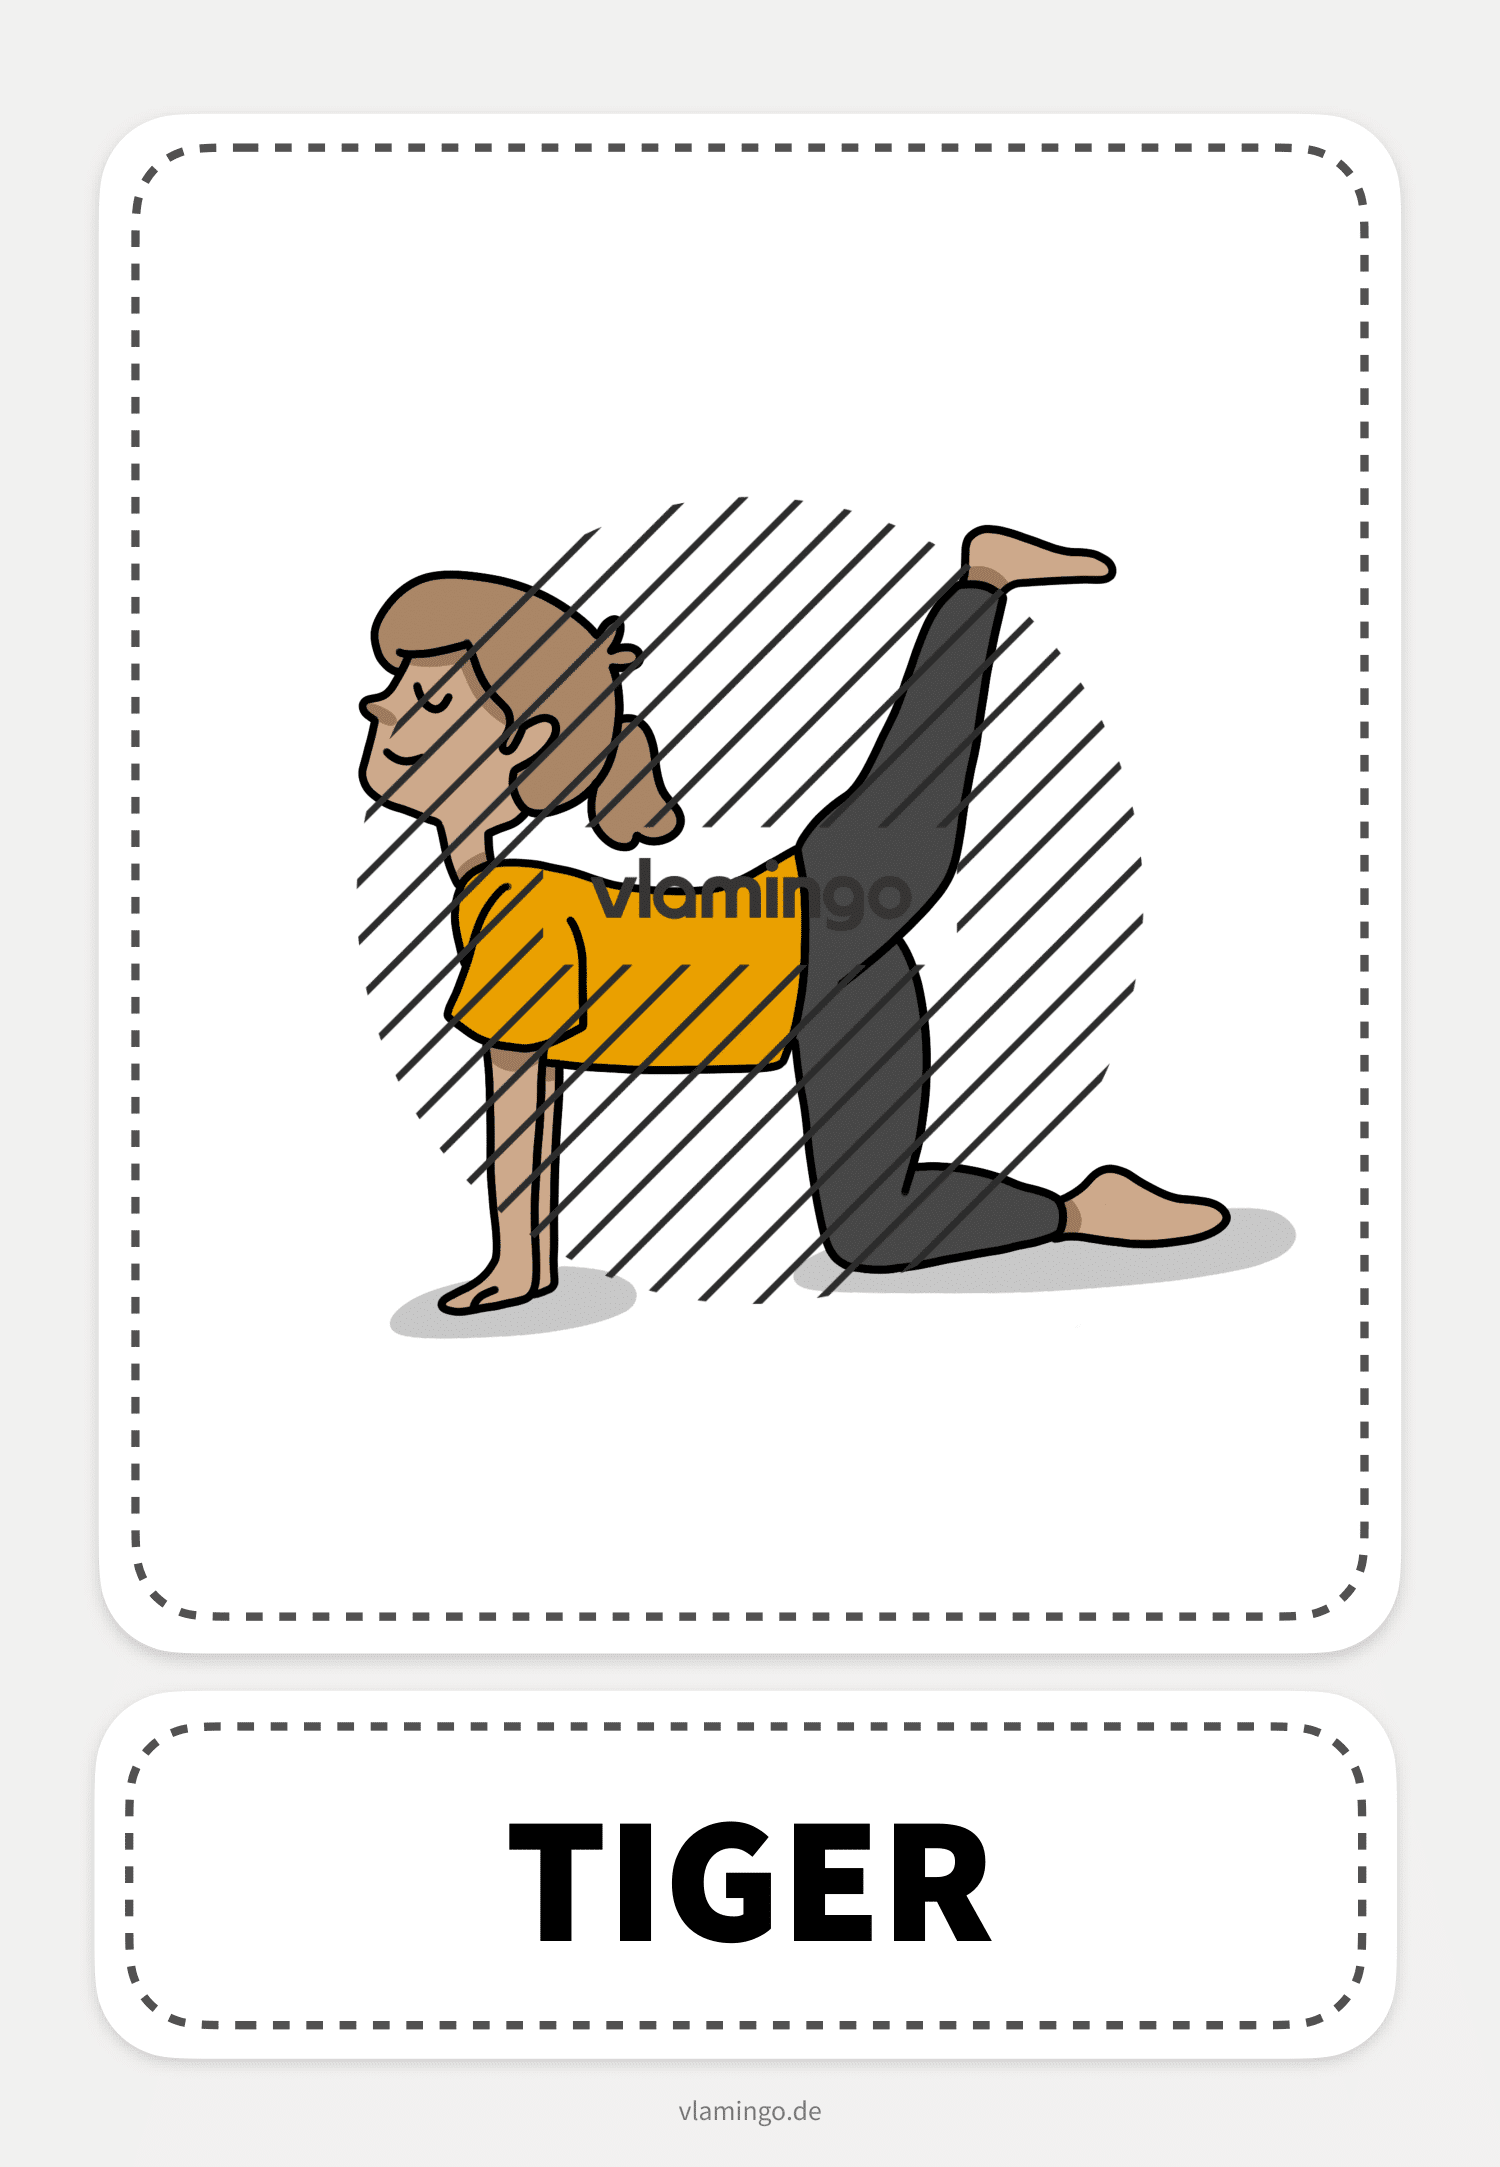 Tiger - Yoga-Übung (Kinderyoga)